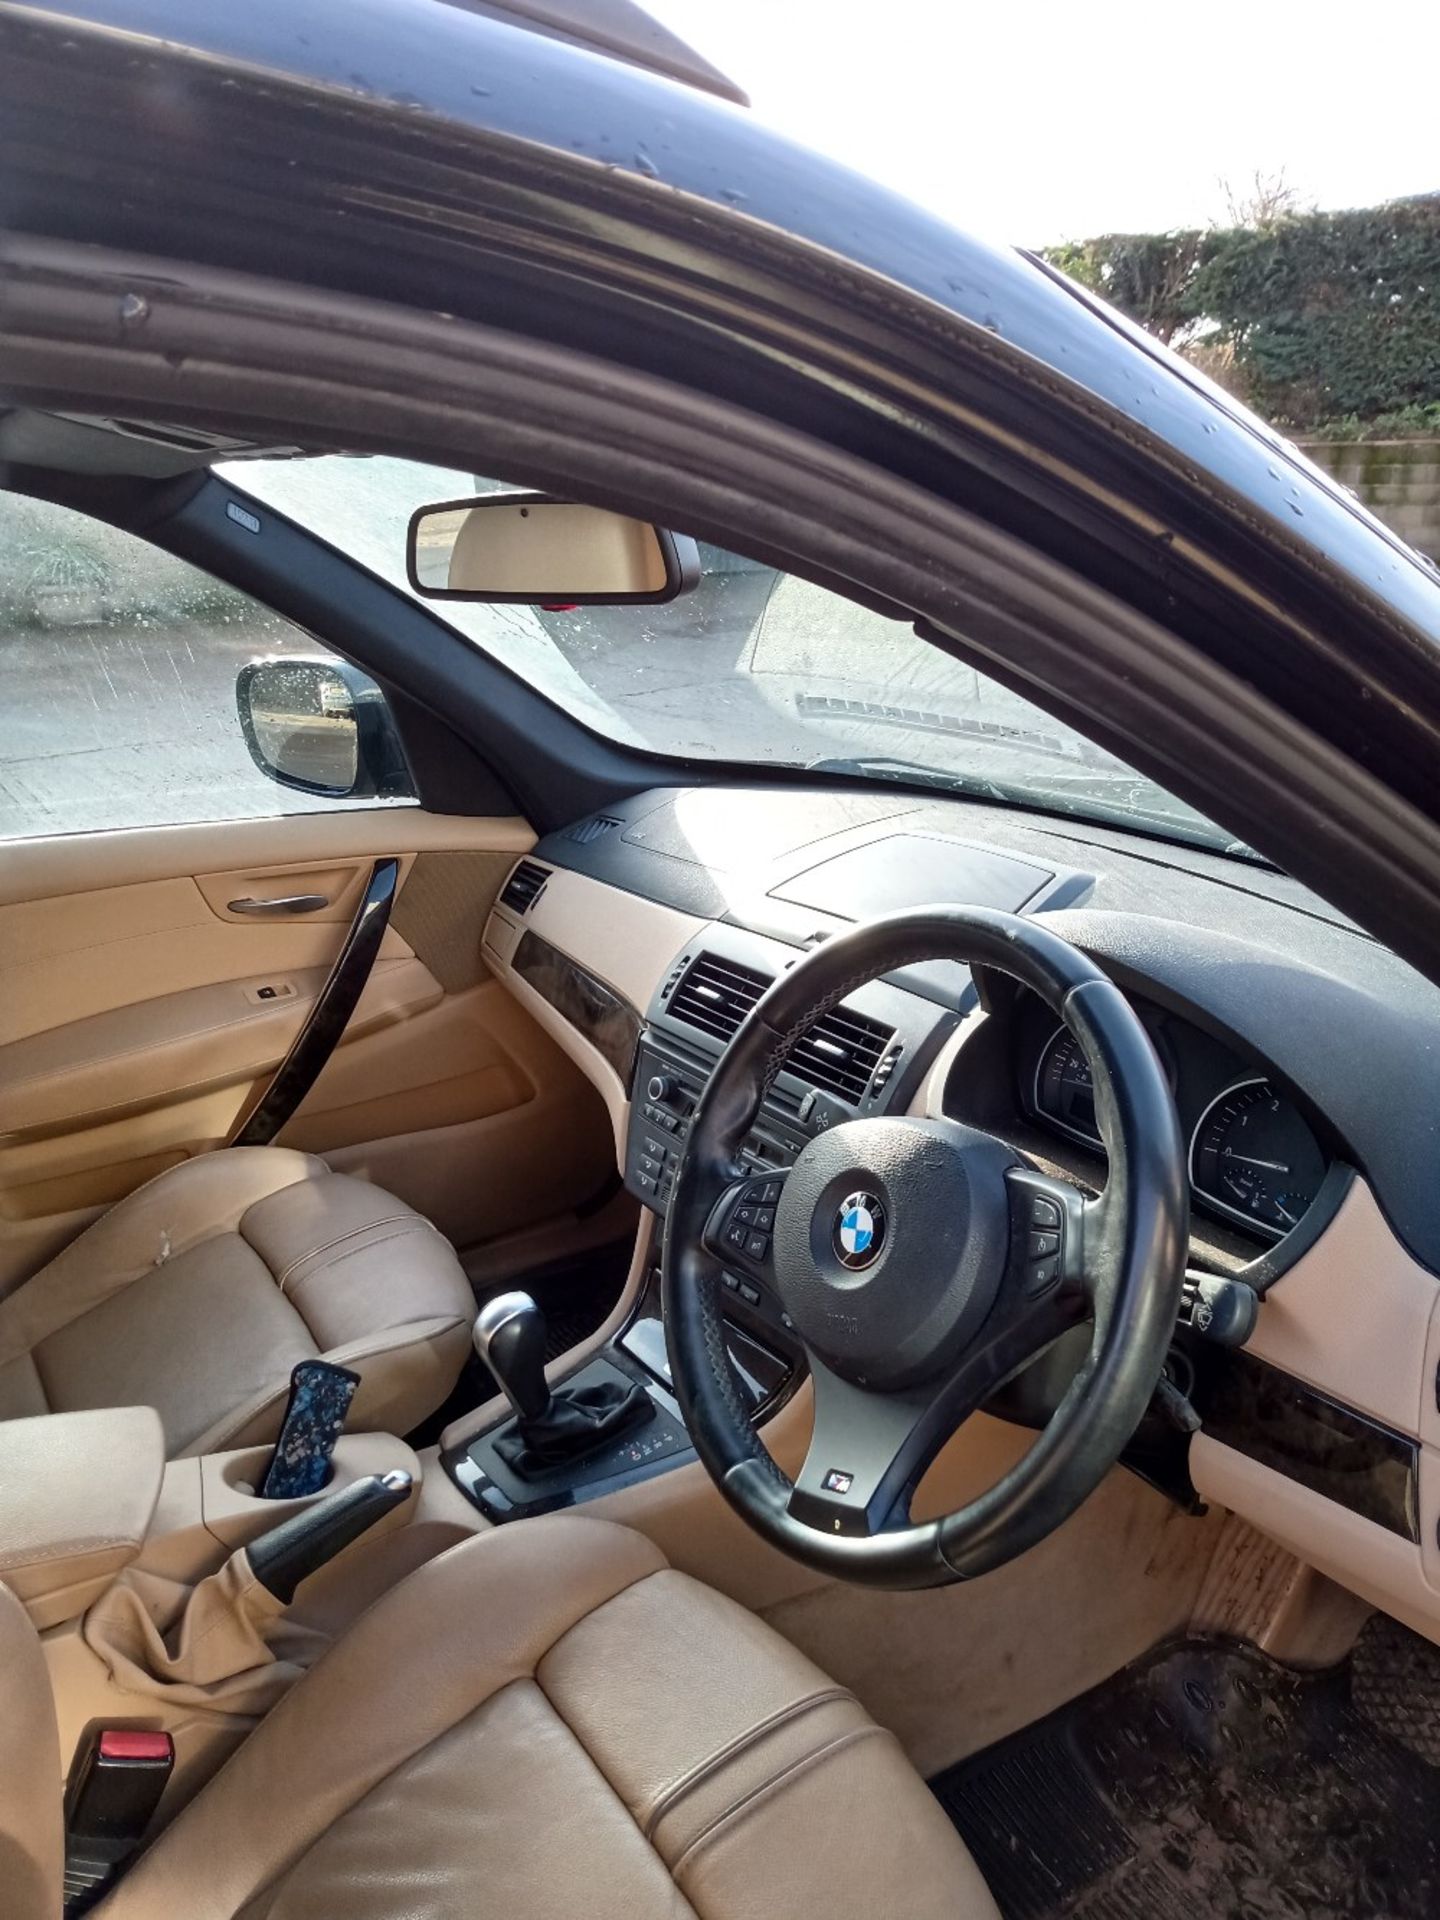 BMW X3 DIESEL CAR - Image 5 of 6